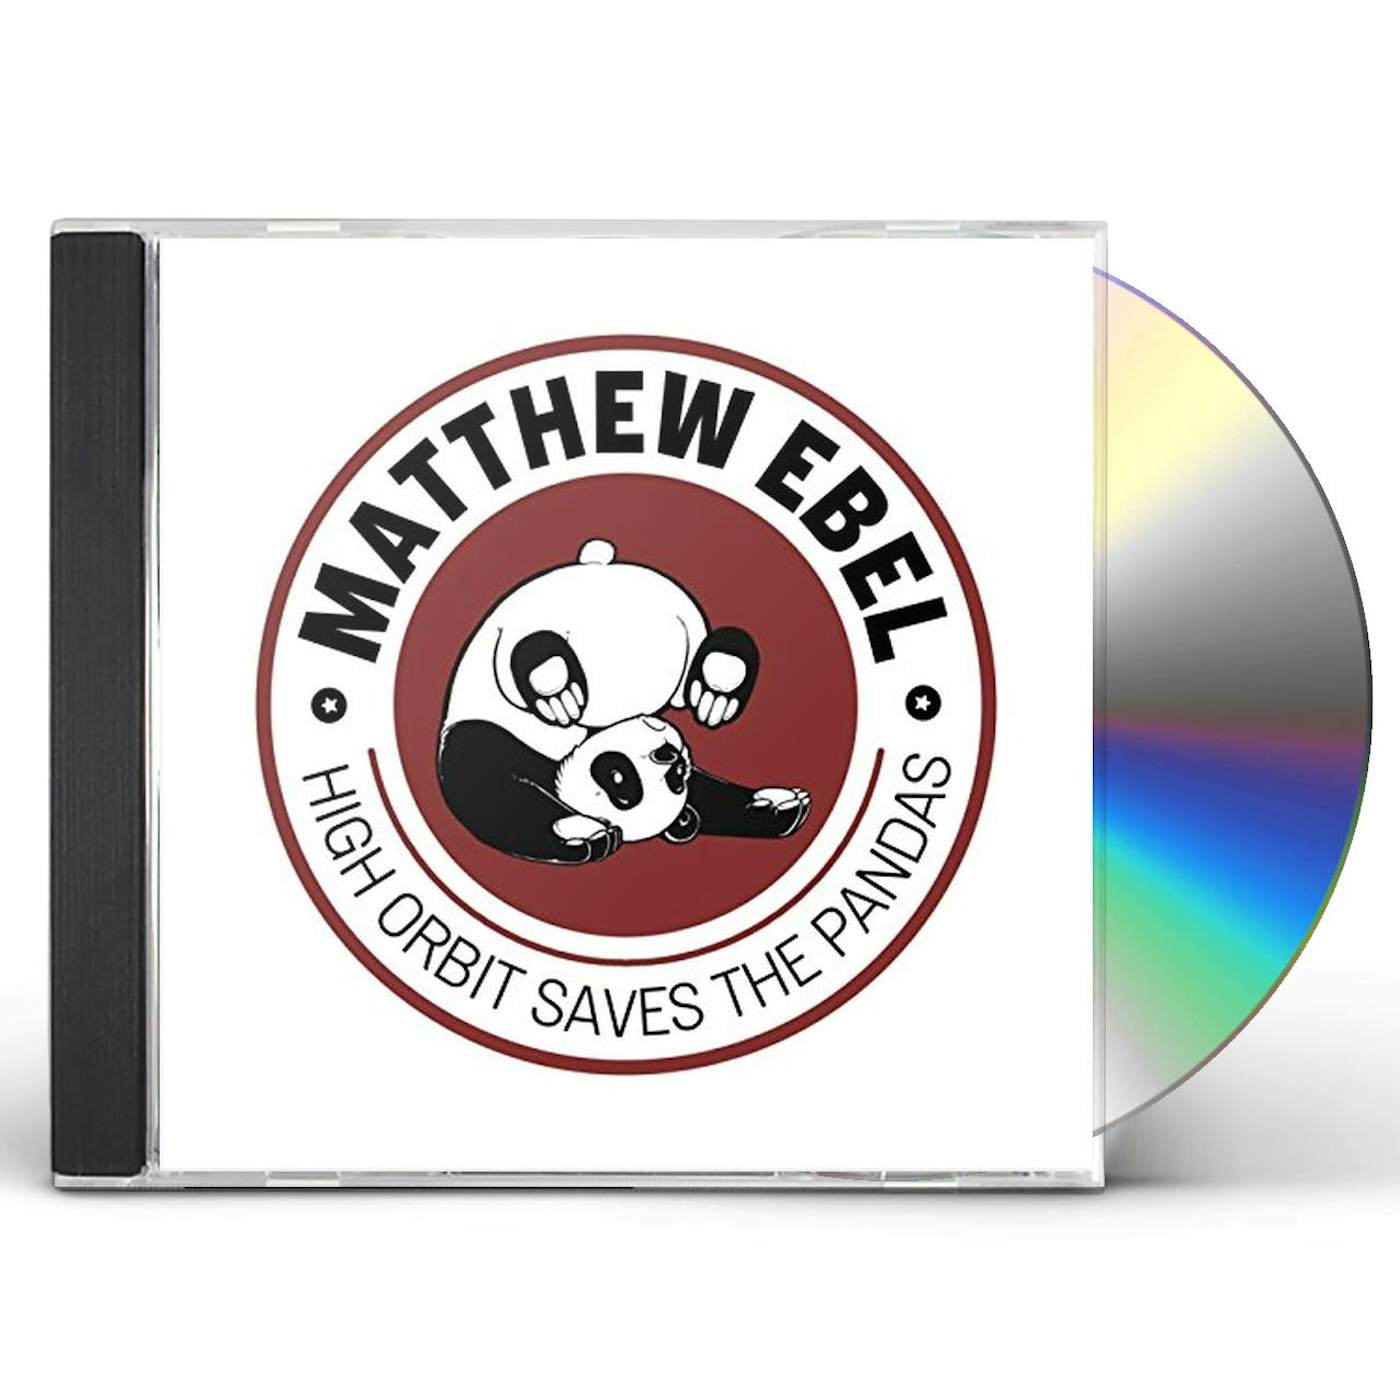 Matthew Ebel HIGH ORBIT SAVES THE PANDAS CD